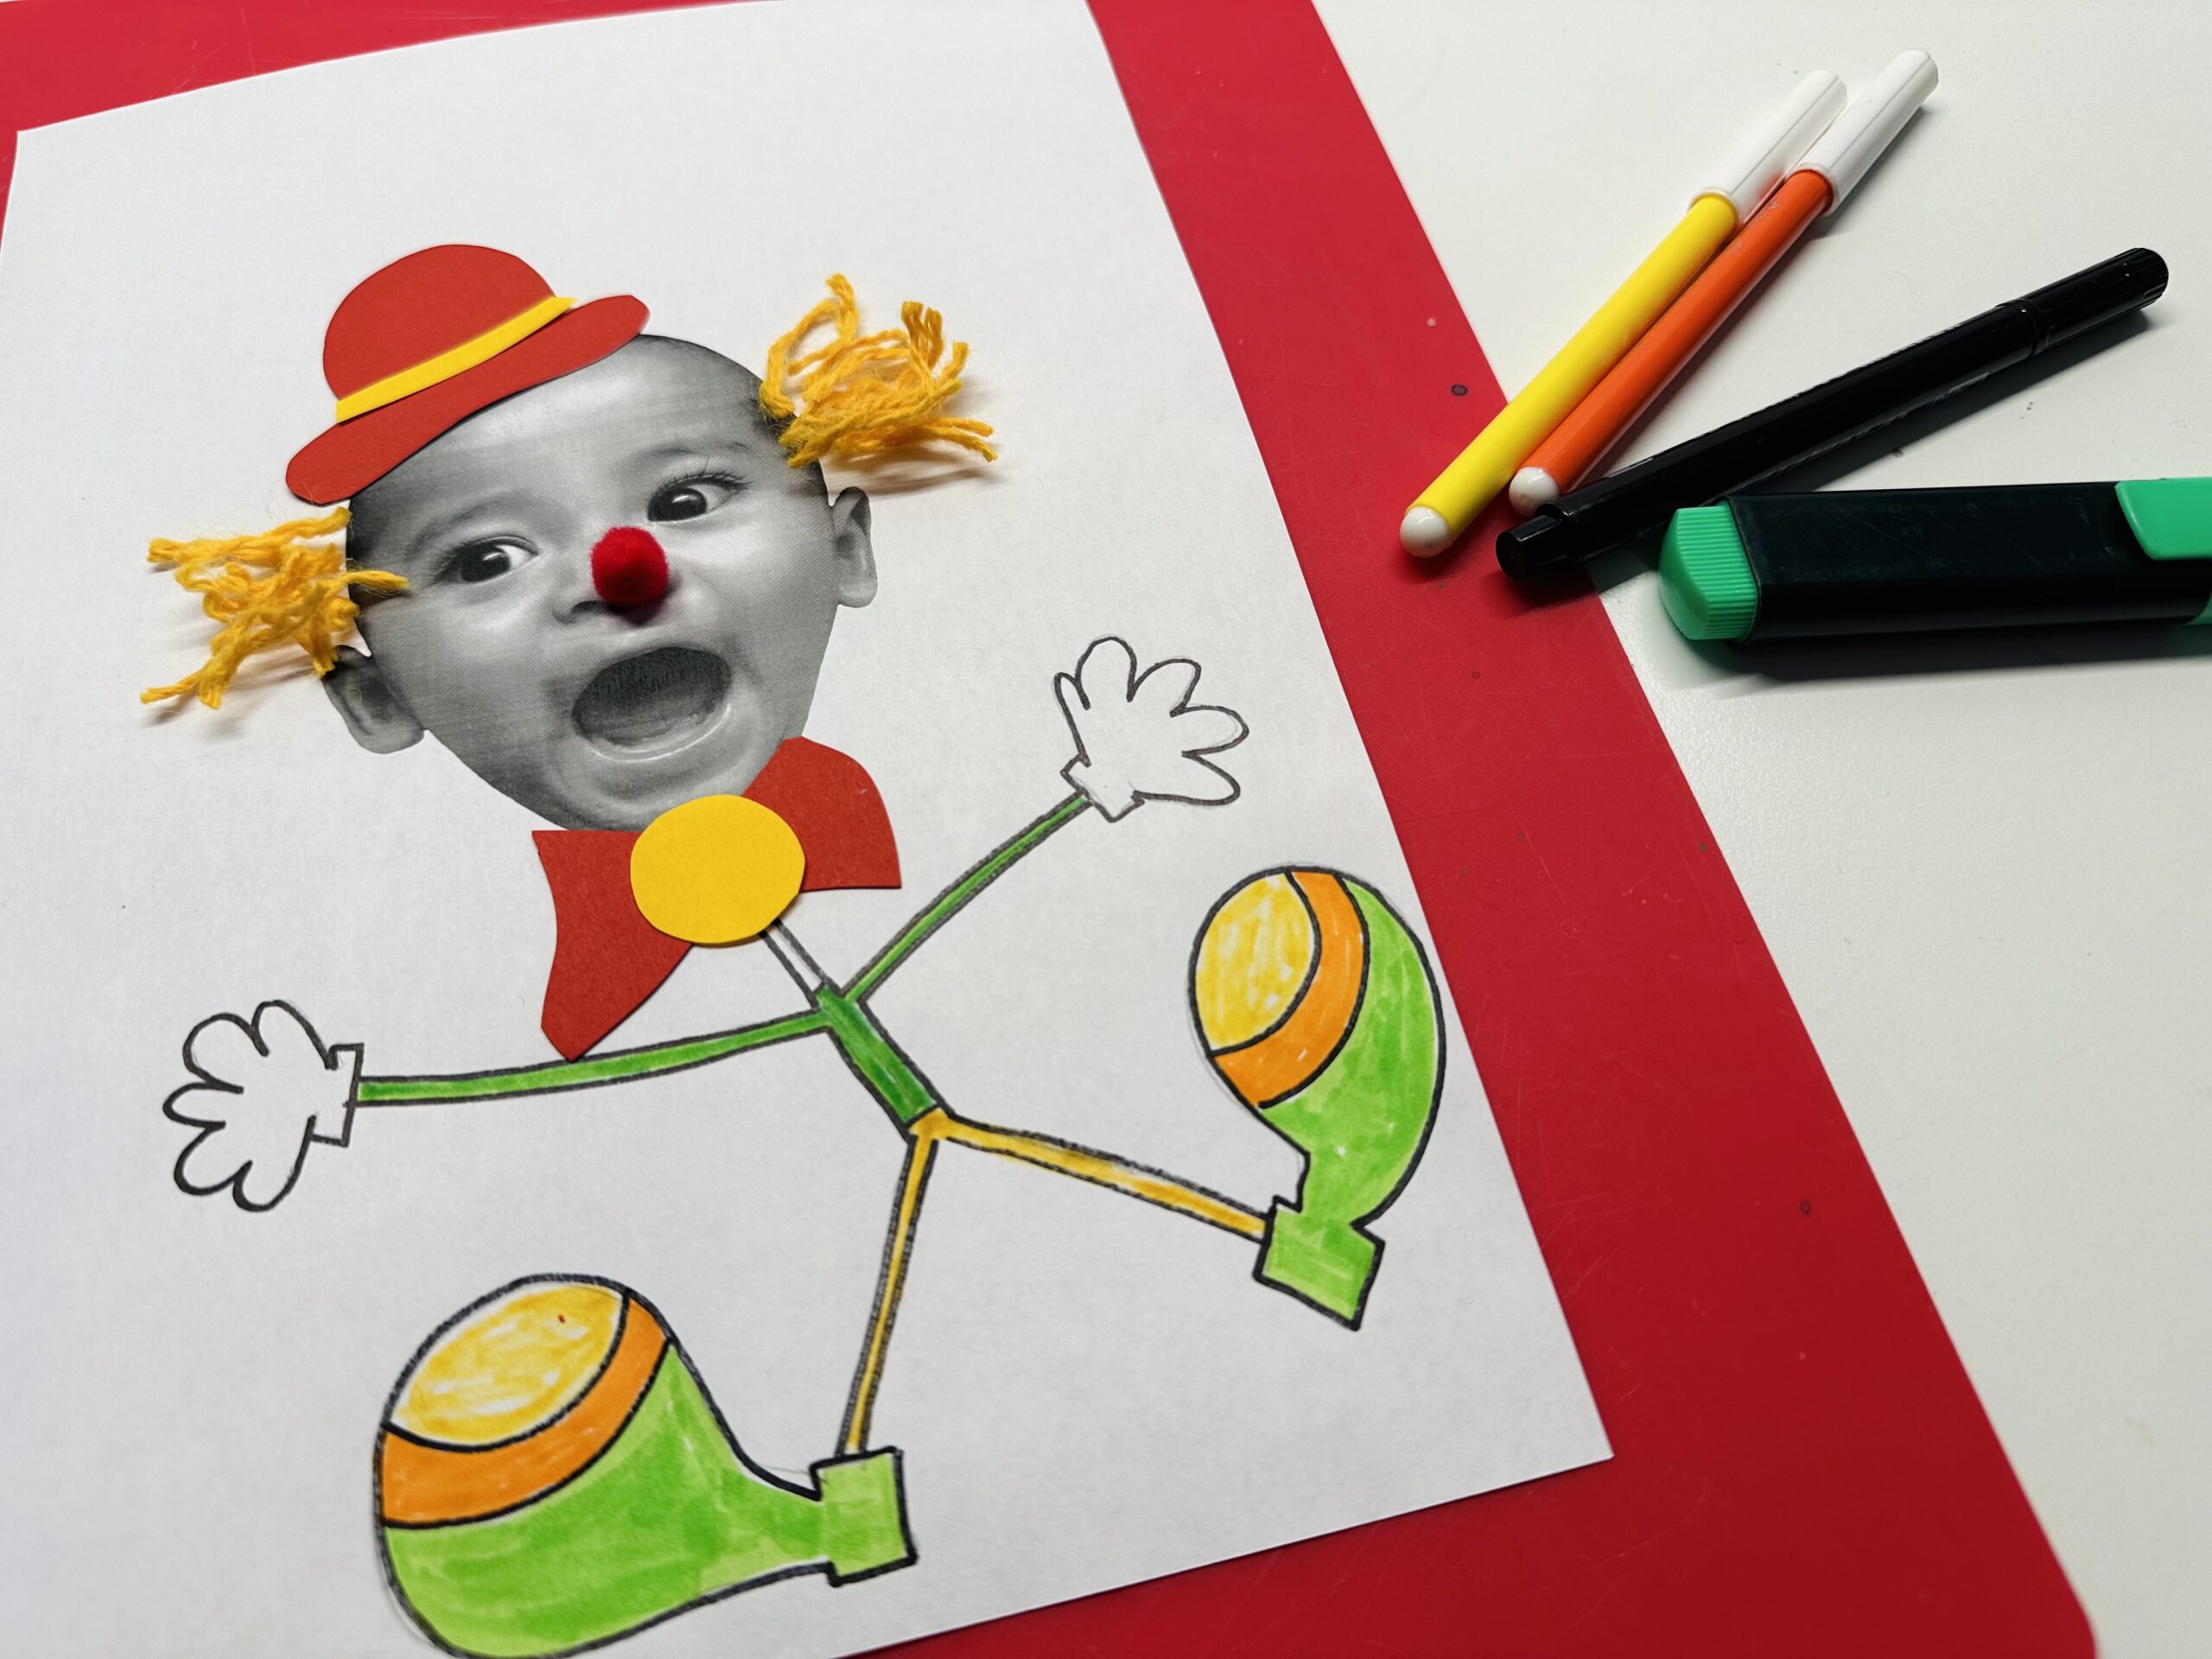 Bild zum Schritt 18 für das Bastel- und DIY-Abenteuer für Kinder: 'Fertig ist euer lustiges Männchen/ dein Clown.'